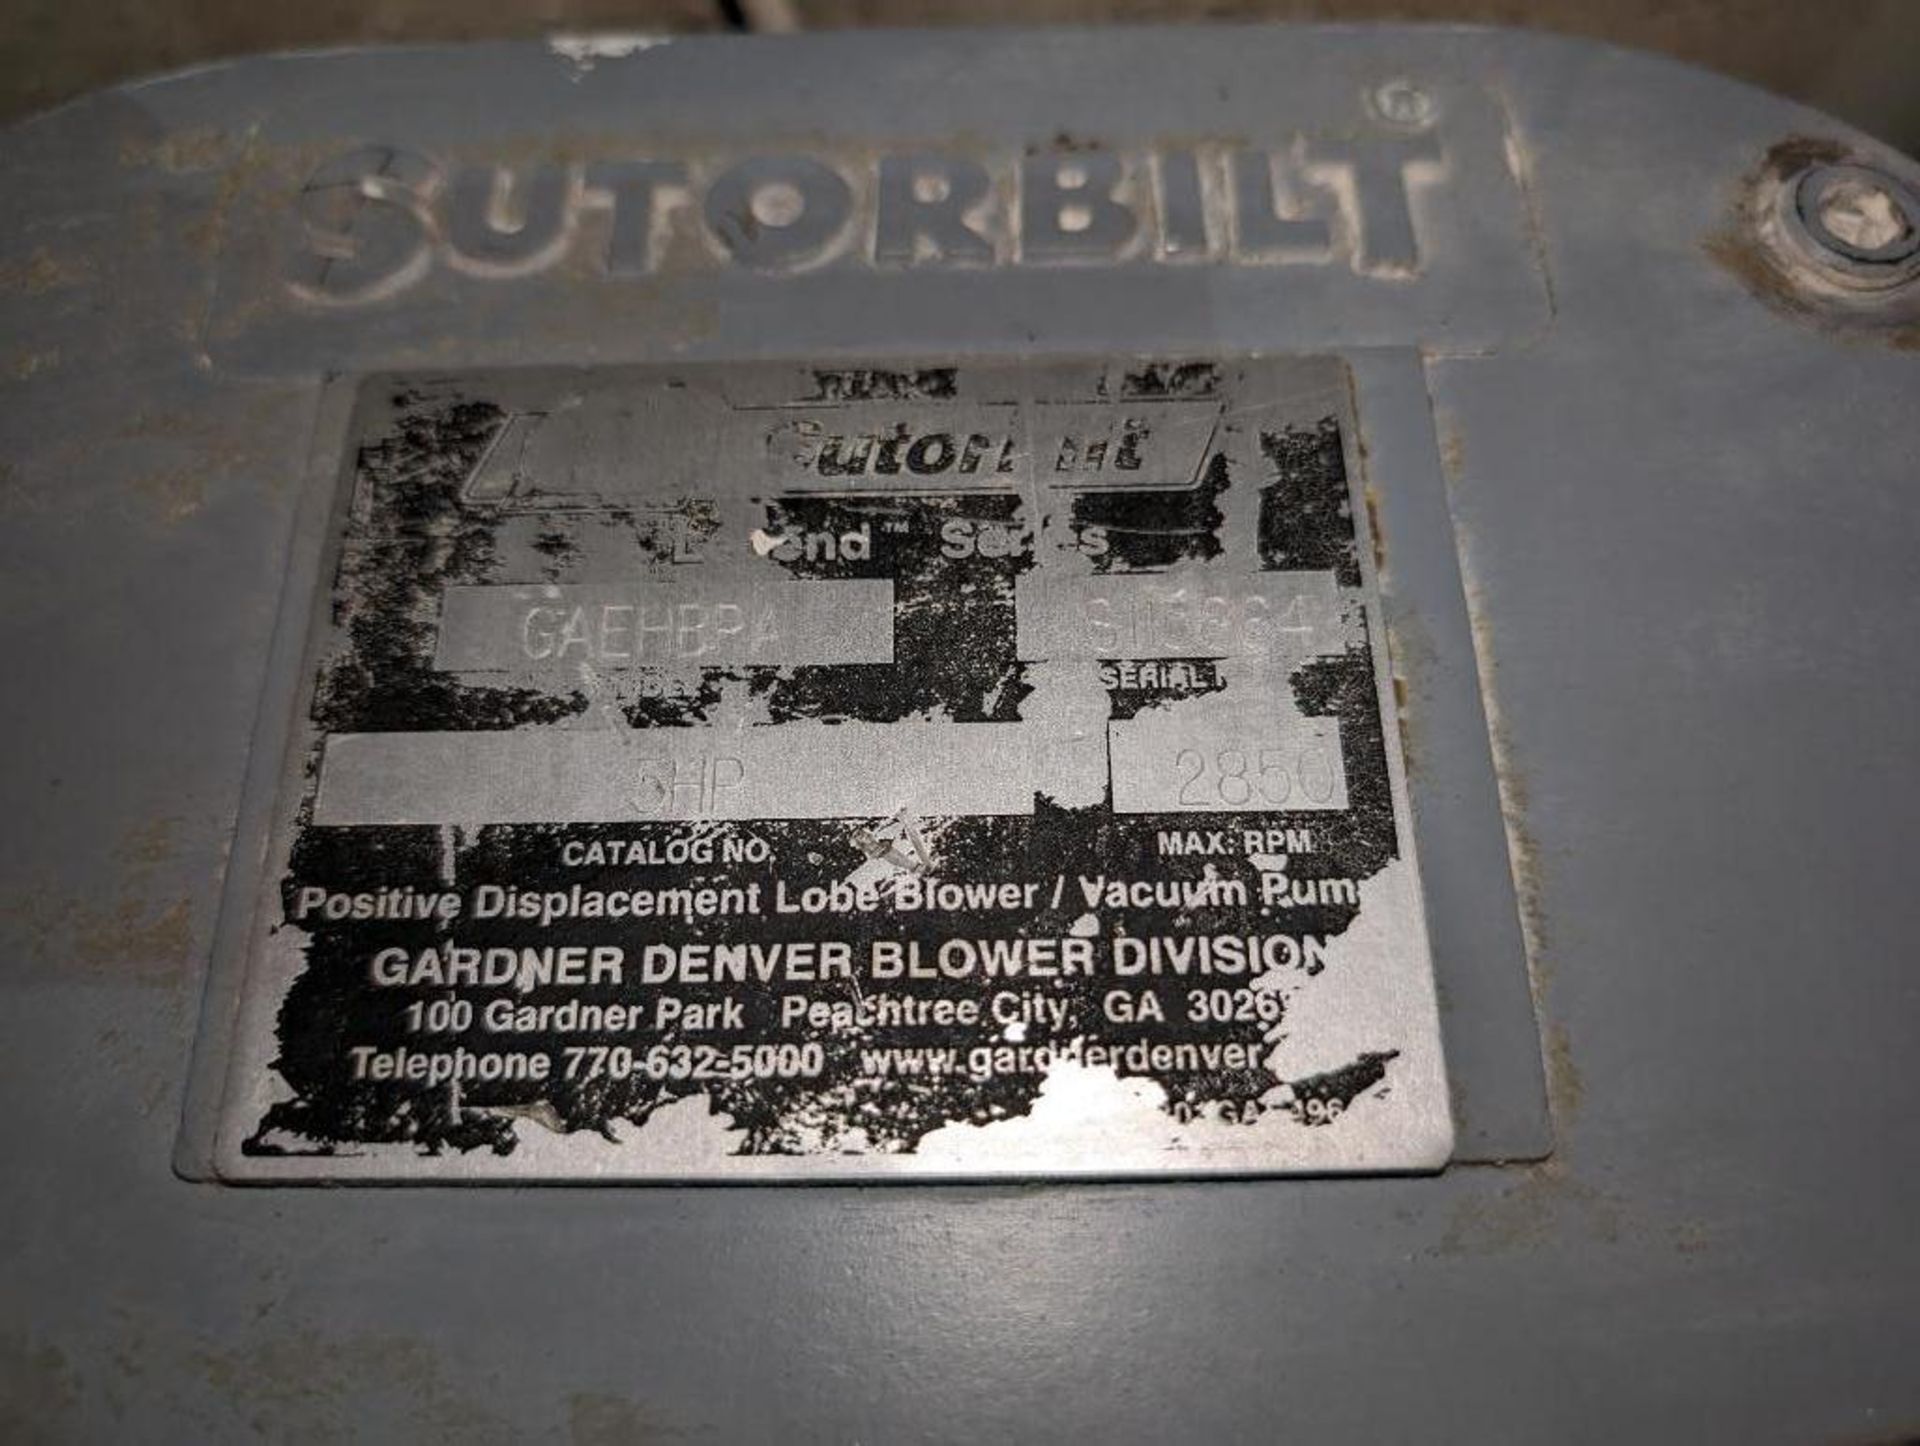 Sutorbuilt blower package - Image 6 of 8